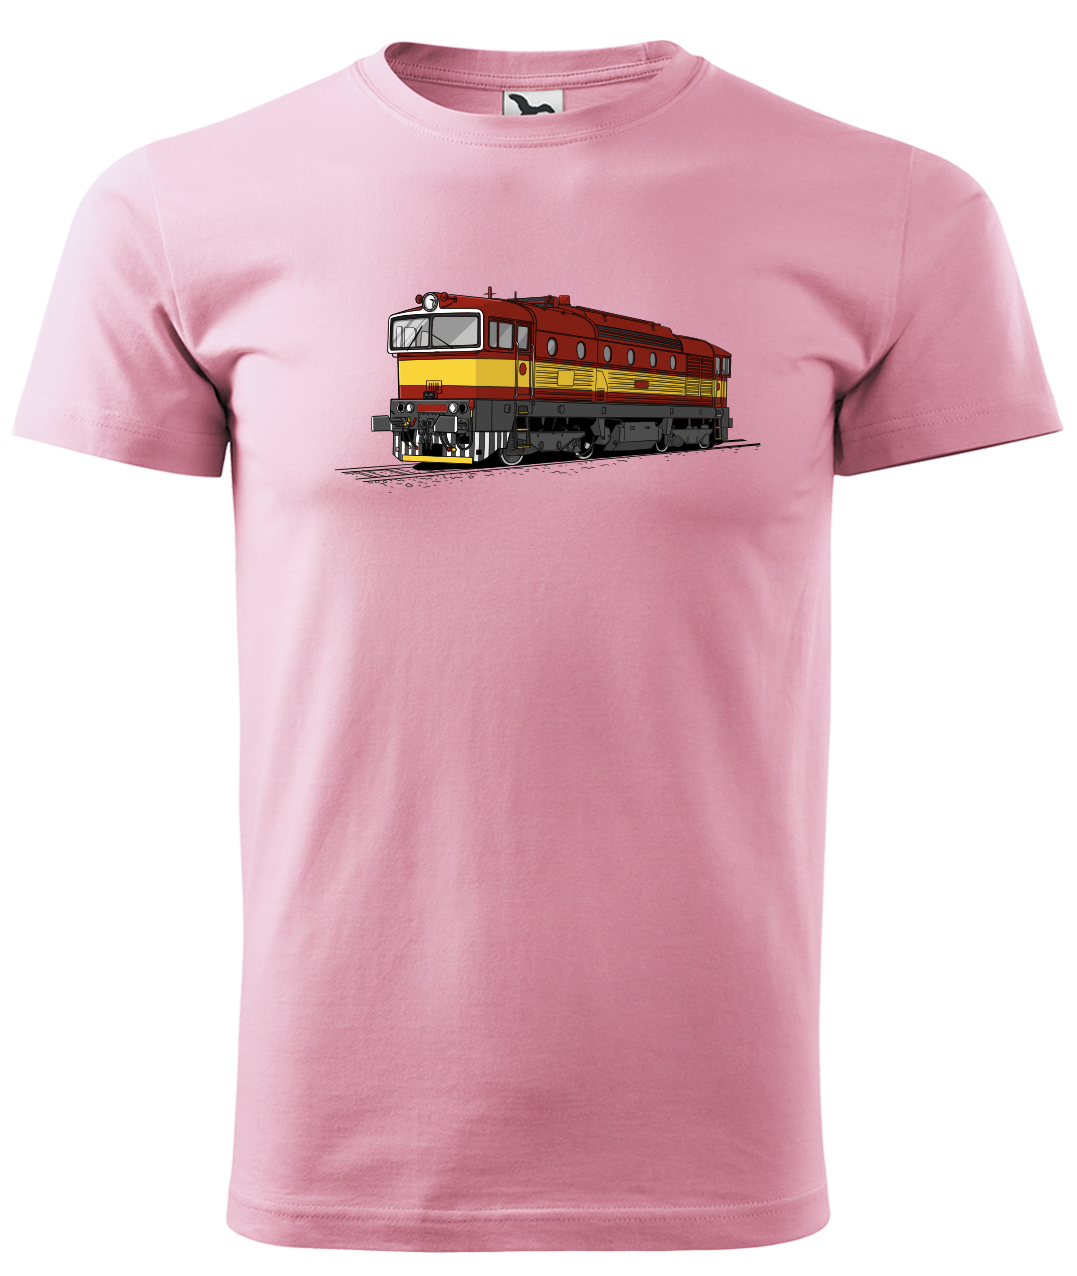 Dětské tričko s vlakem - Barevná lokomotiva BREJLOVEC Velikost: 4 roky / 110 cm, Barva: Růžová (30)